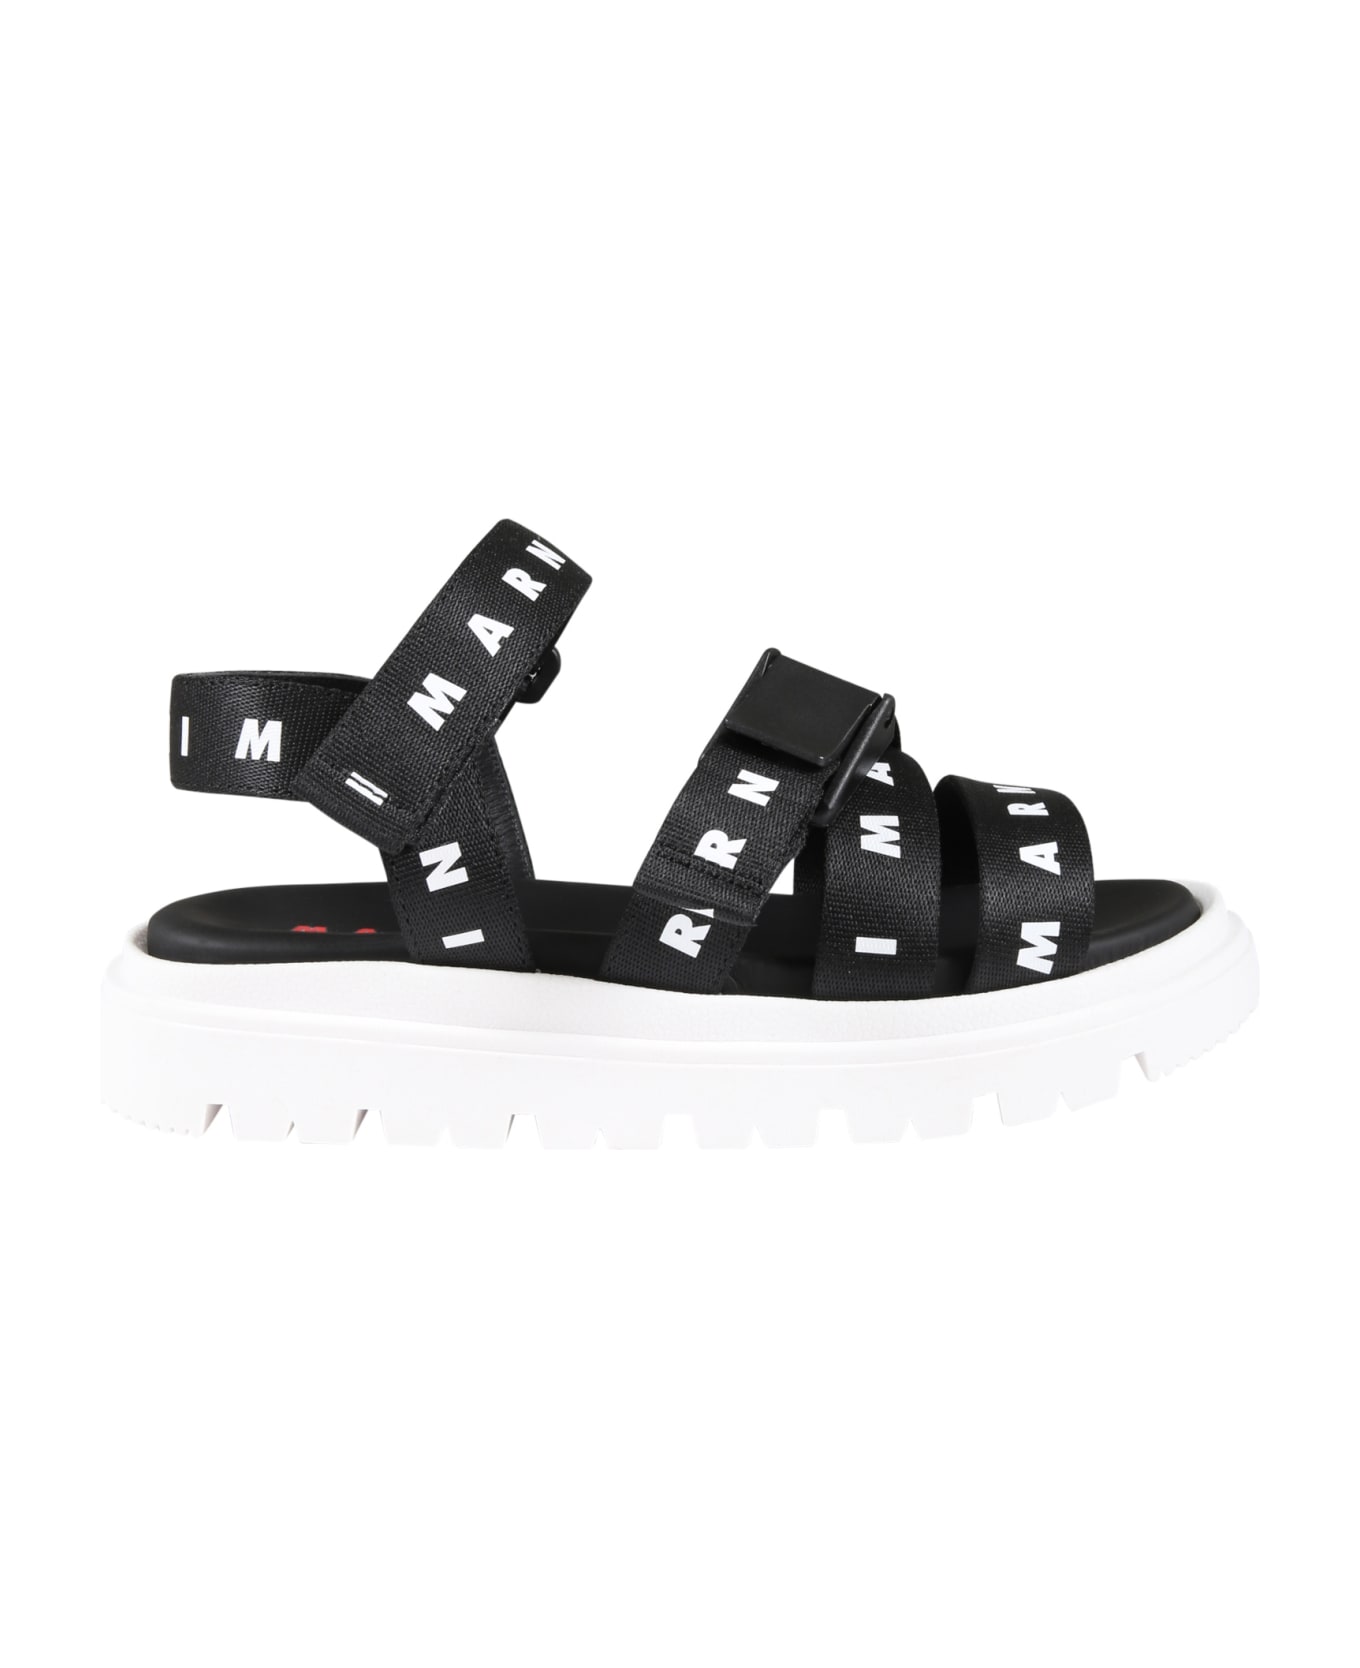 Marni Black Sandals For Girl With White Logo - Black